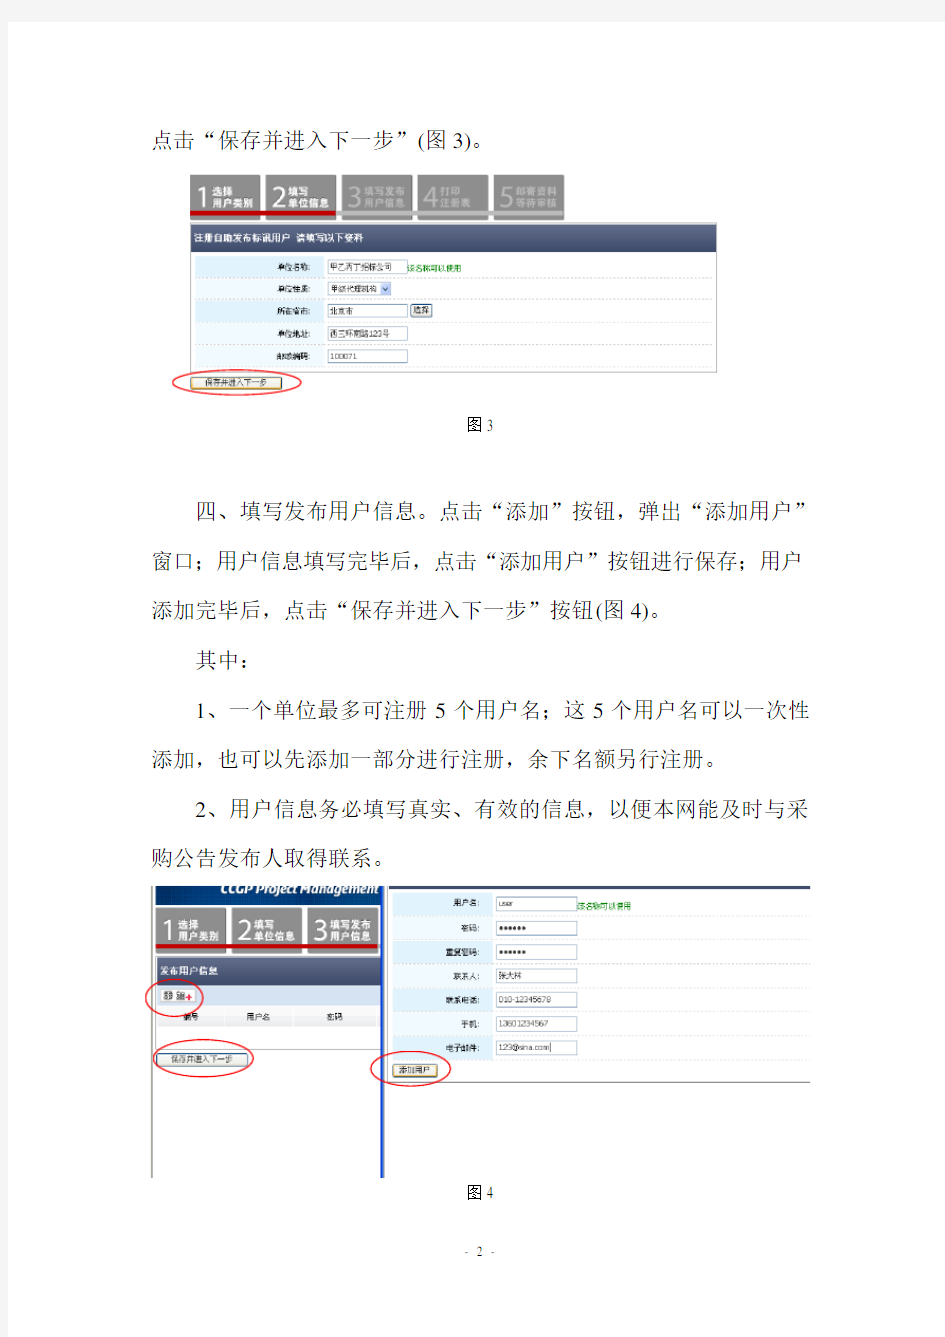 中国政府采购网采购公告发布管理系统操作手册